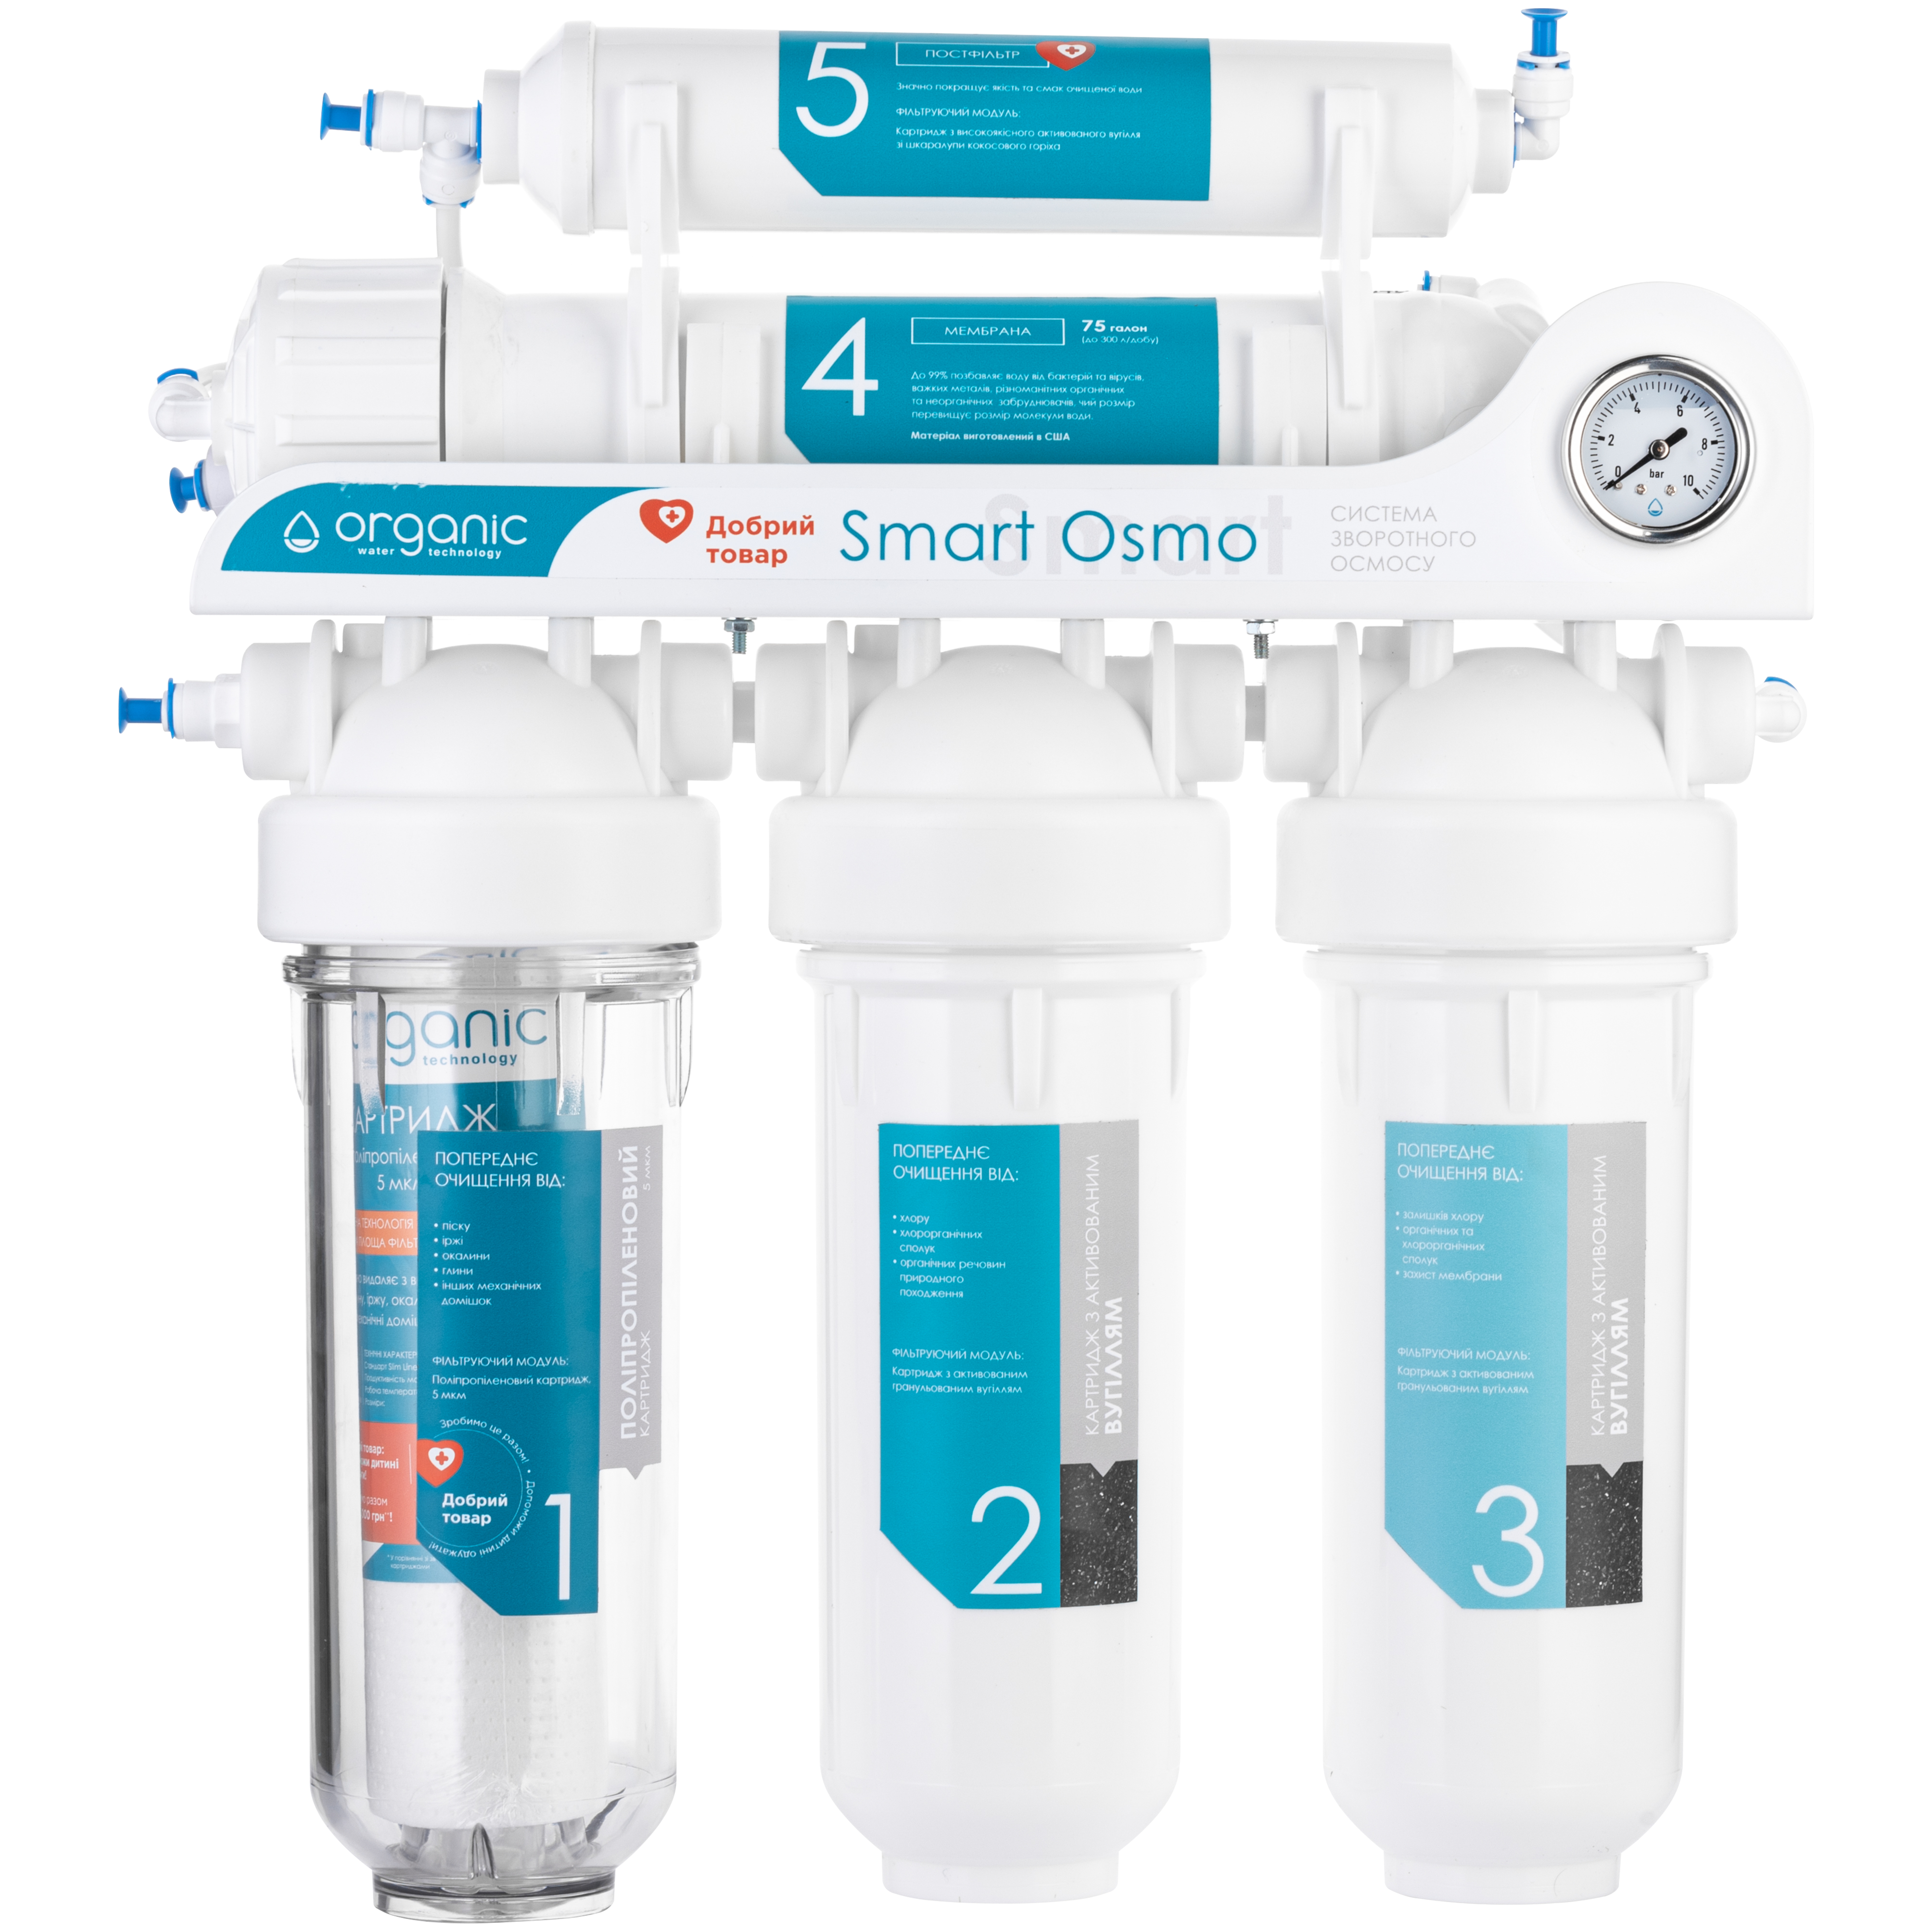 Отзывы фильтр для воды Organic Smart Osmo 5